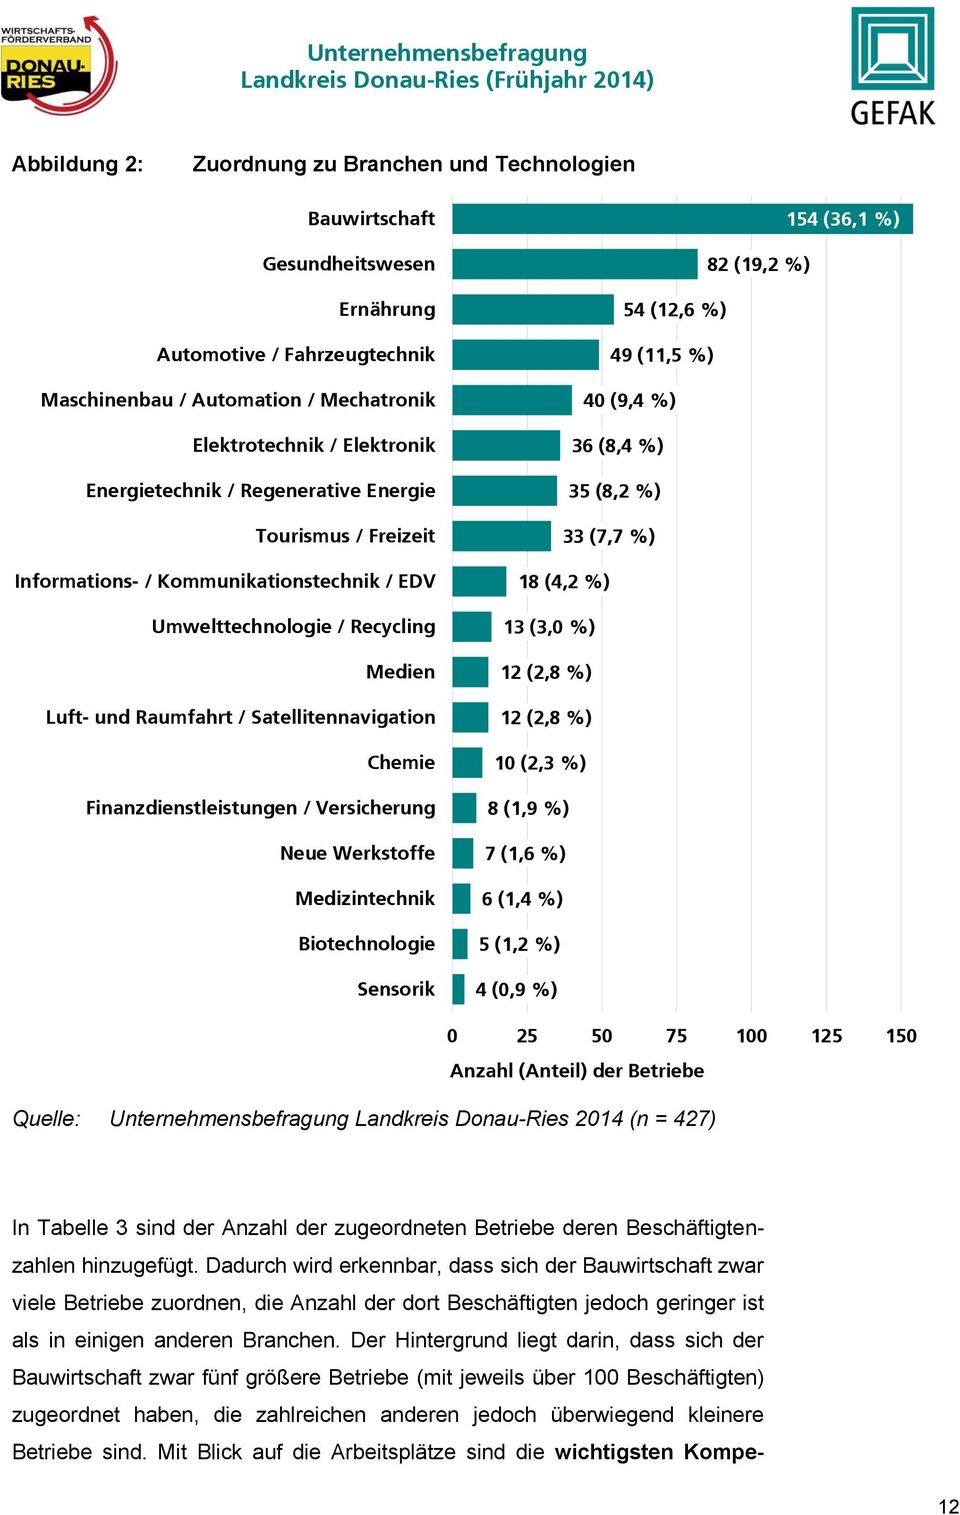 Finanzdienstleistungen / Versicherung Neue Werkstoffe Medizintechnik Biotechnologie Sensorik 154 (36,1 %) 82 (19,2 %) 54 (12,6 %) 49 (11,5 %) 40 (9,4 %) 36 (8,4 %) 35 (8,2 %) 33 (7,7 %) 18 (4,2 %) 13